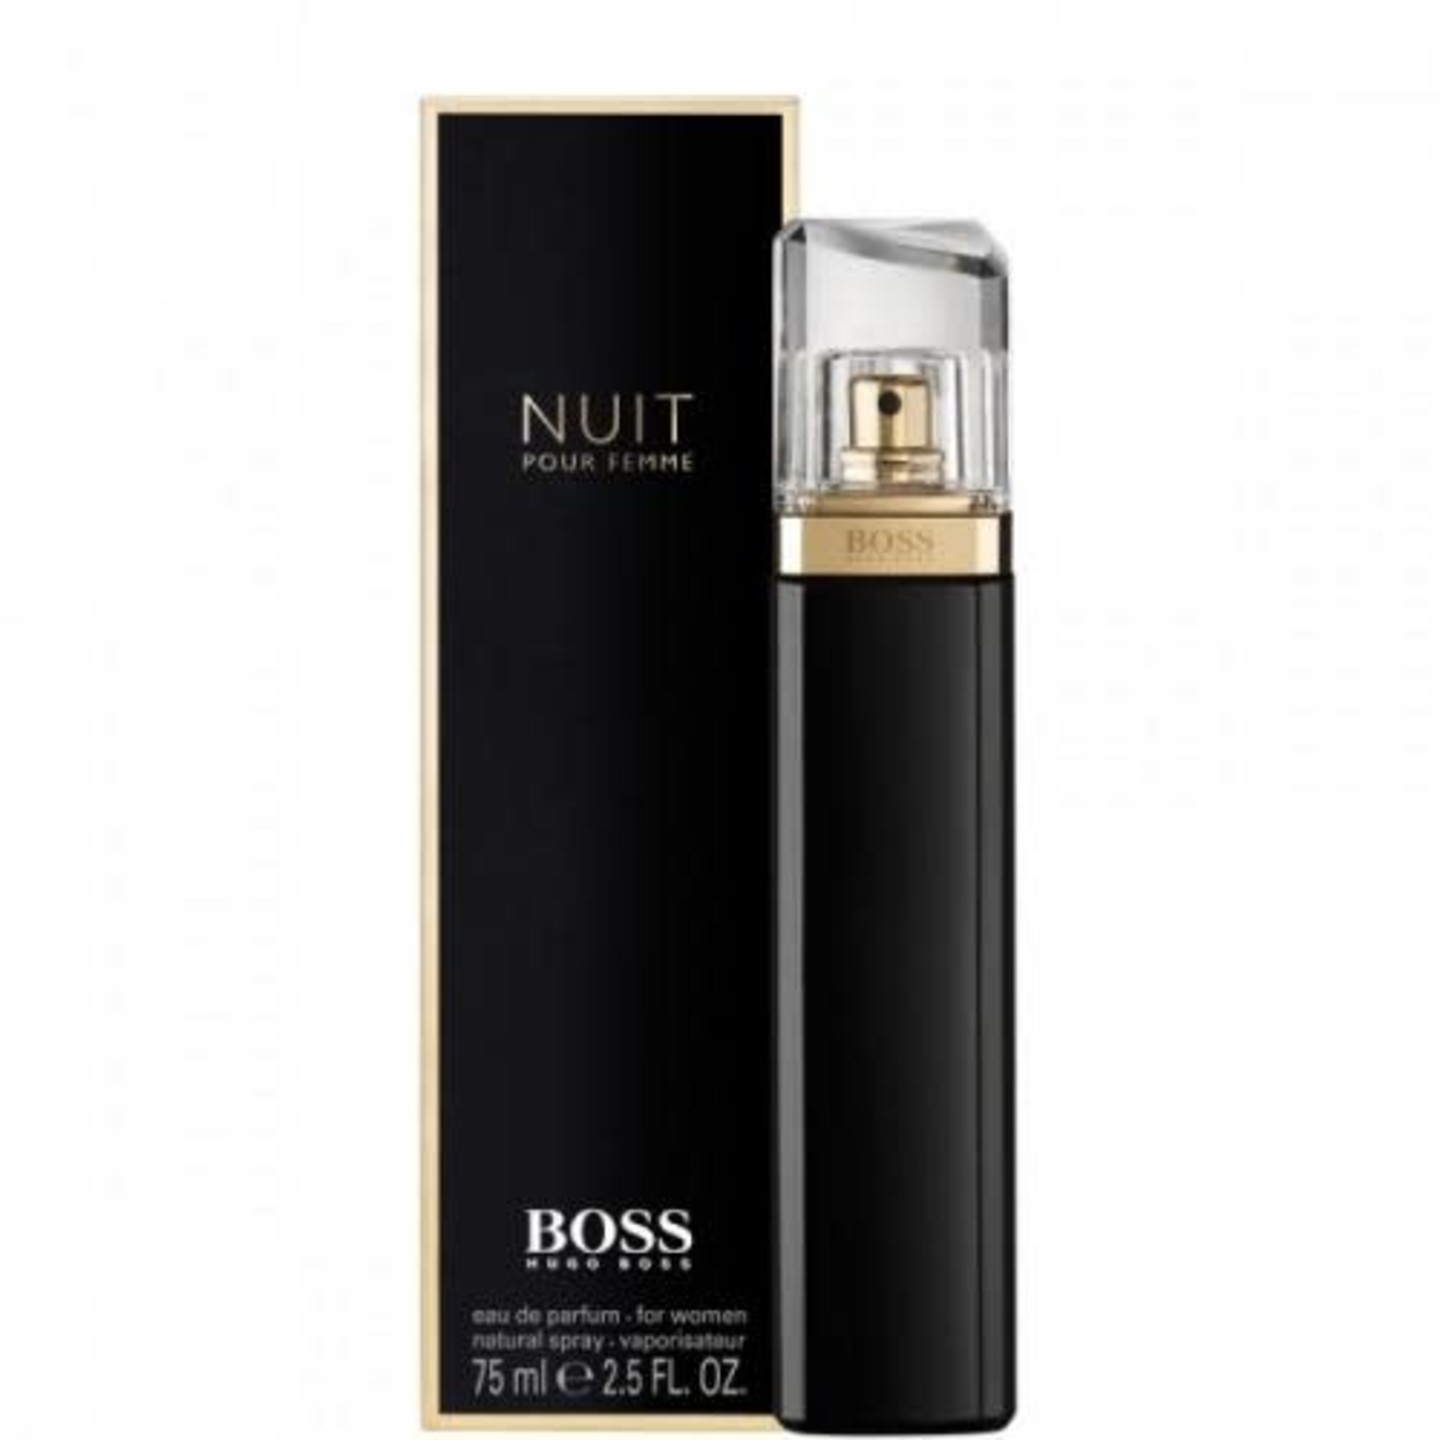 Hugo Boss Boss Nuit For Women Eau de Parfum - Le Parfumier Perfume Store